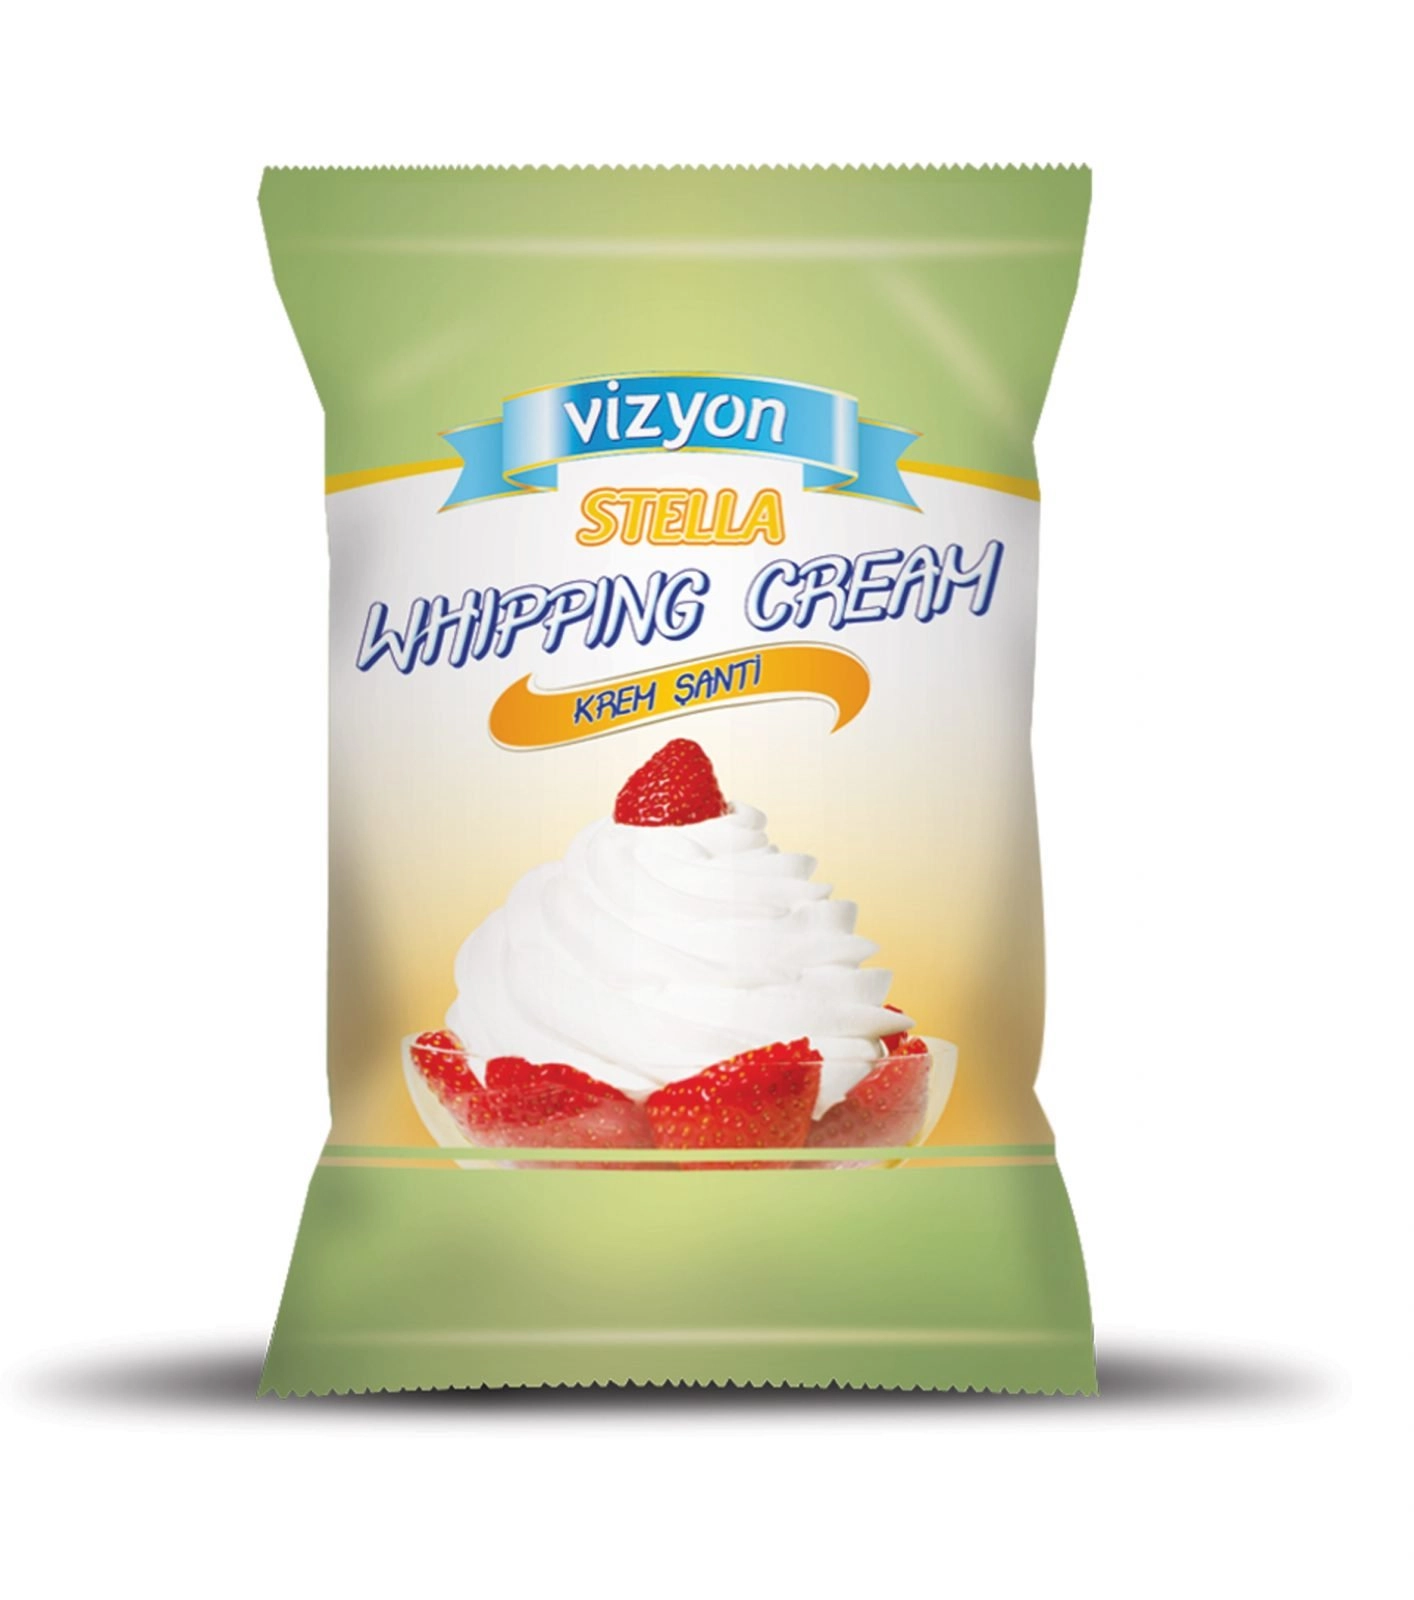 Whipping-cream-500g-pack-image-1414×1600.jpg